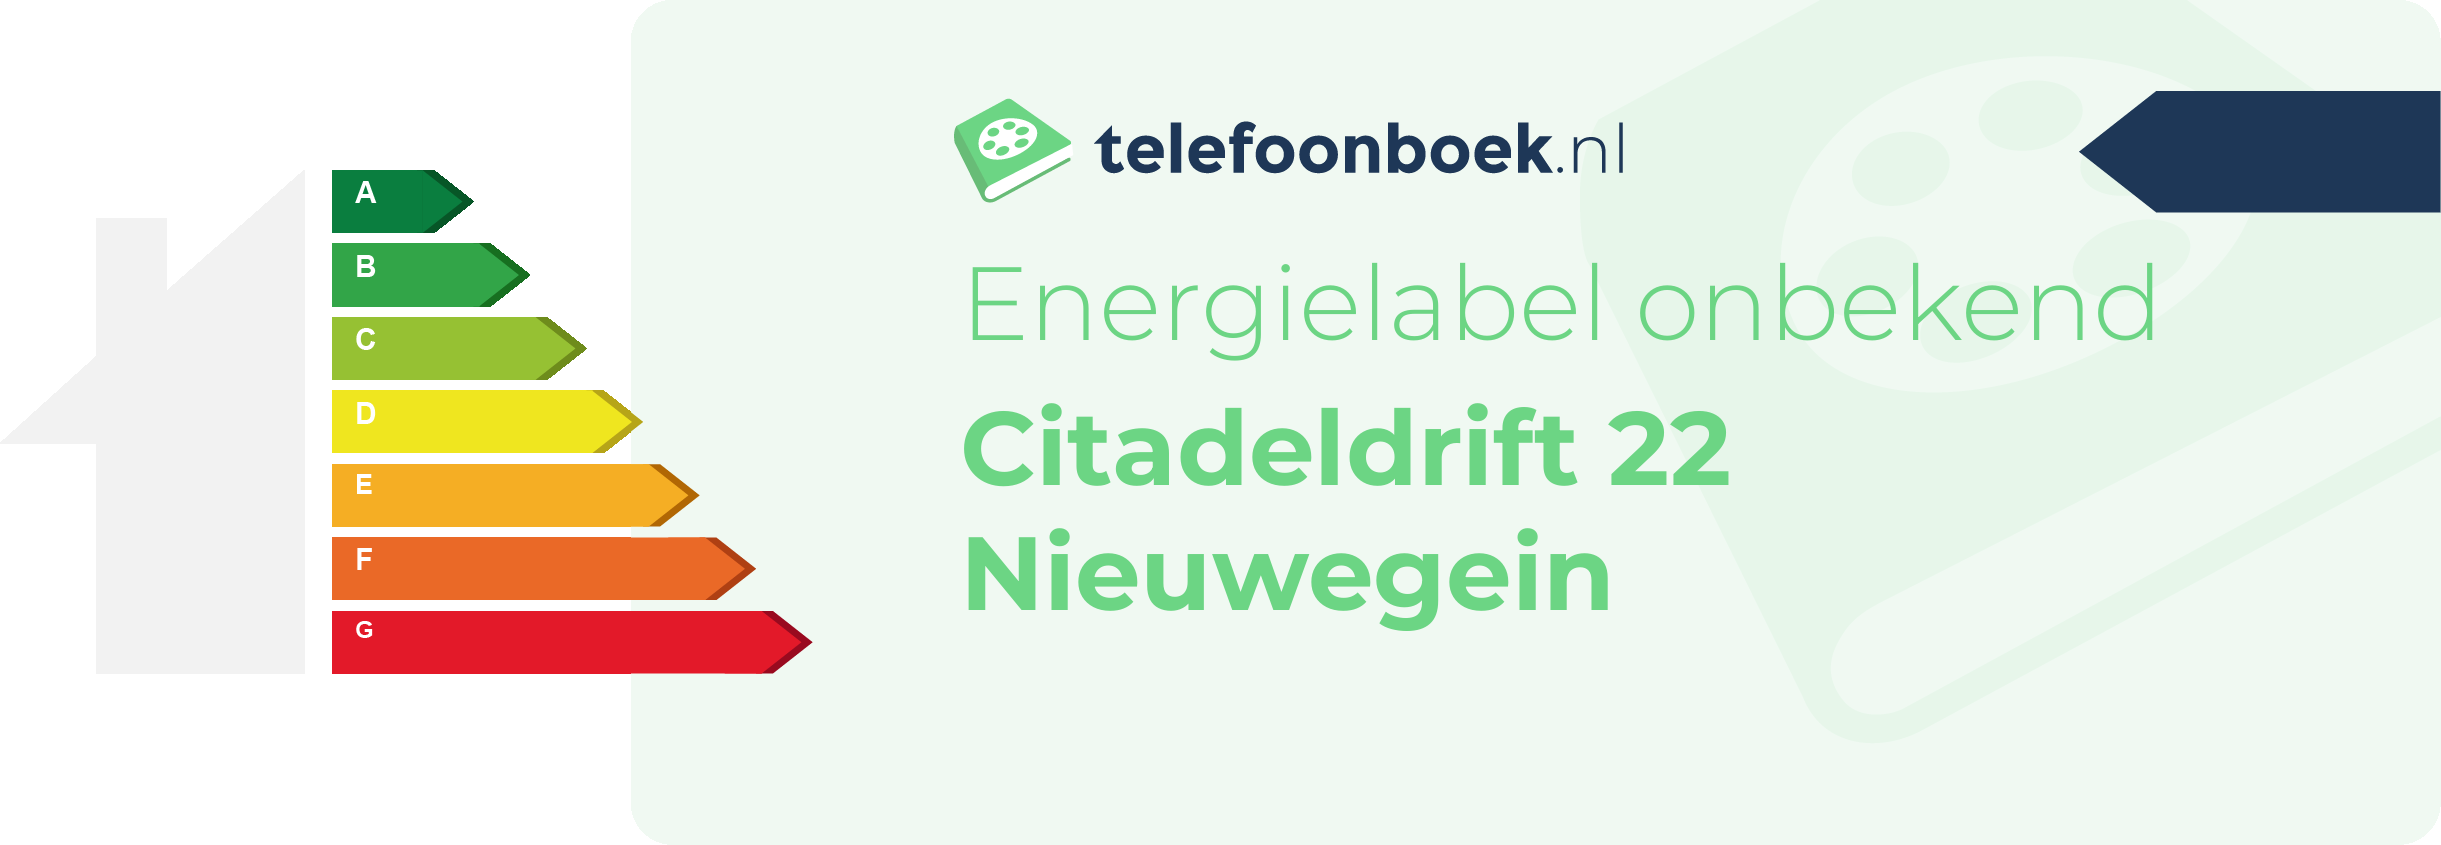 Energielabel Citadeldrift 22 Nieuwegein